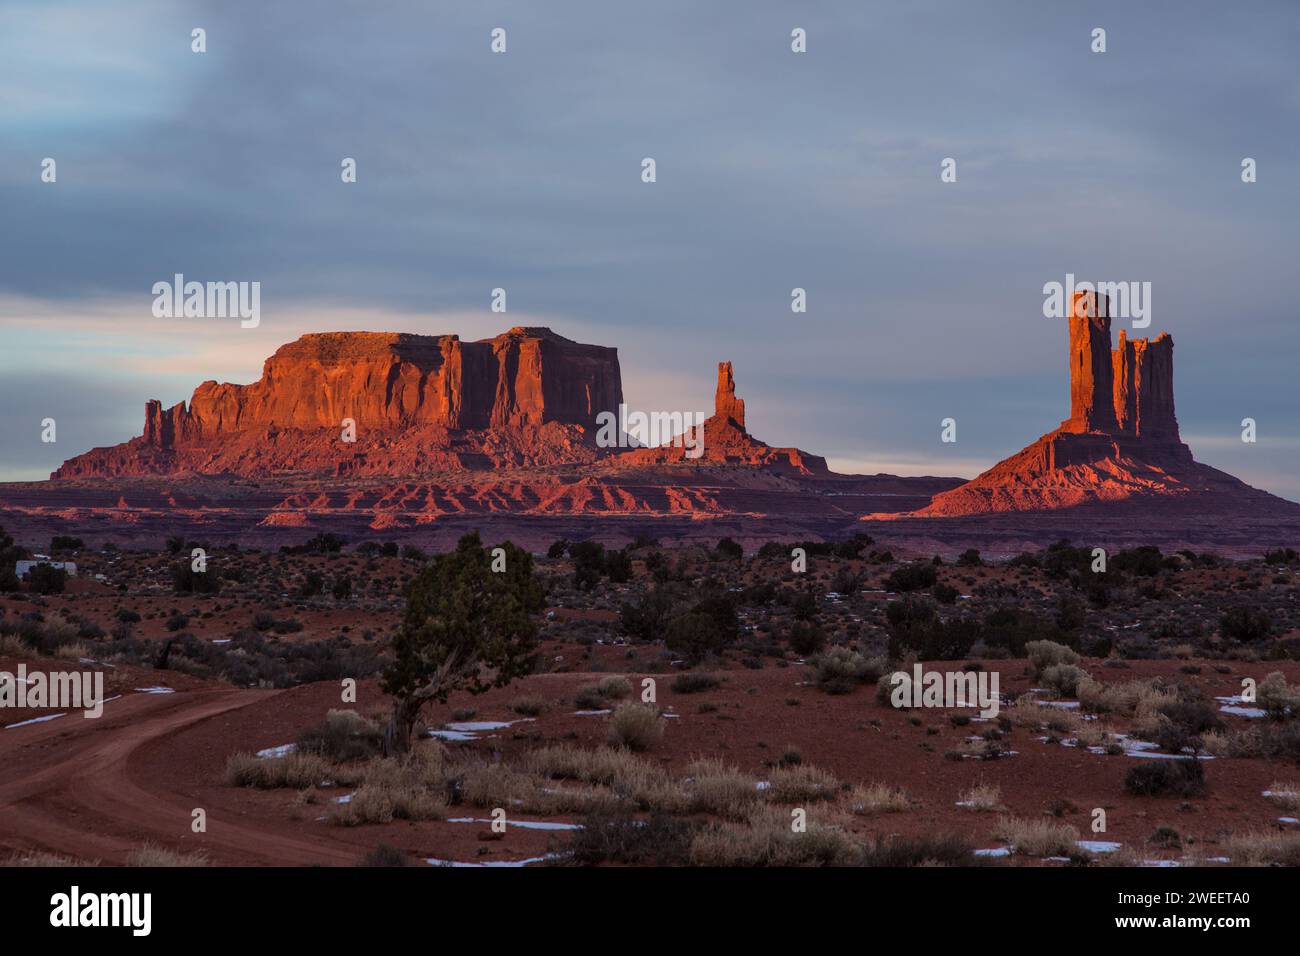 Alba su Sentinal Mesa, il re sul trono, Castle Butte e Stagecoach nel Monument Valley Navajo Tribal Park in Arizona. Questi sono oft Foto Stock